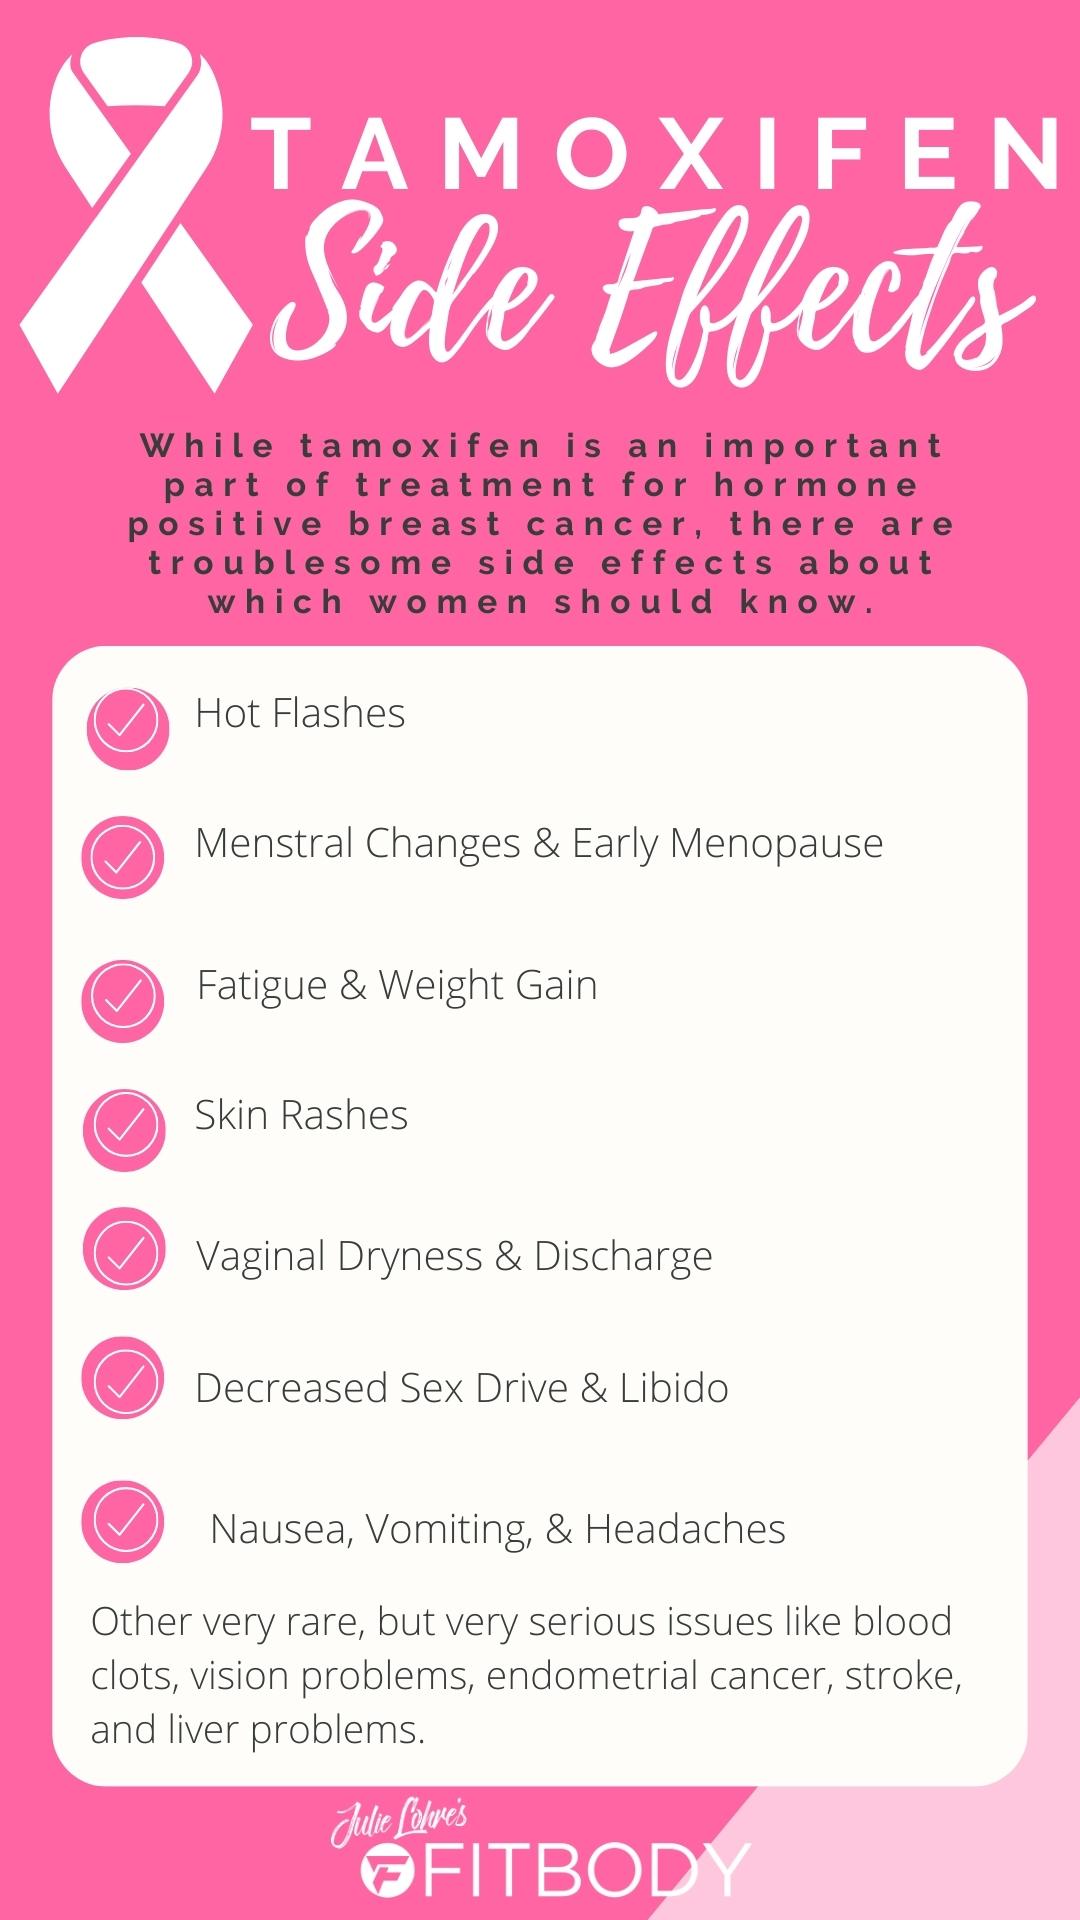 Tamoxifen Side Effects List Graphic